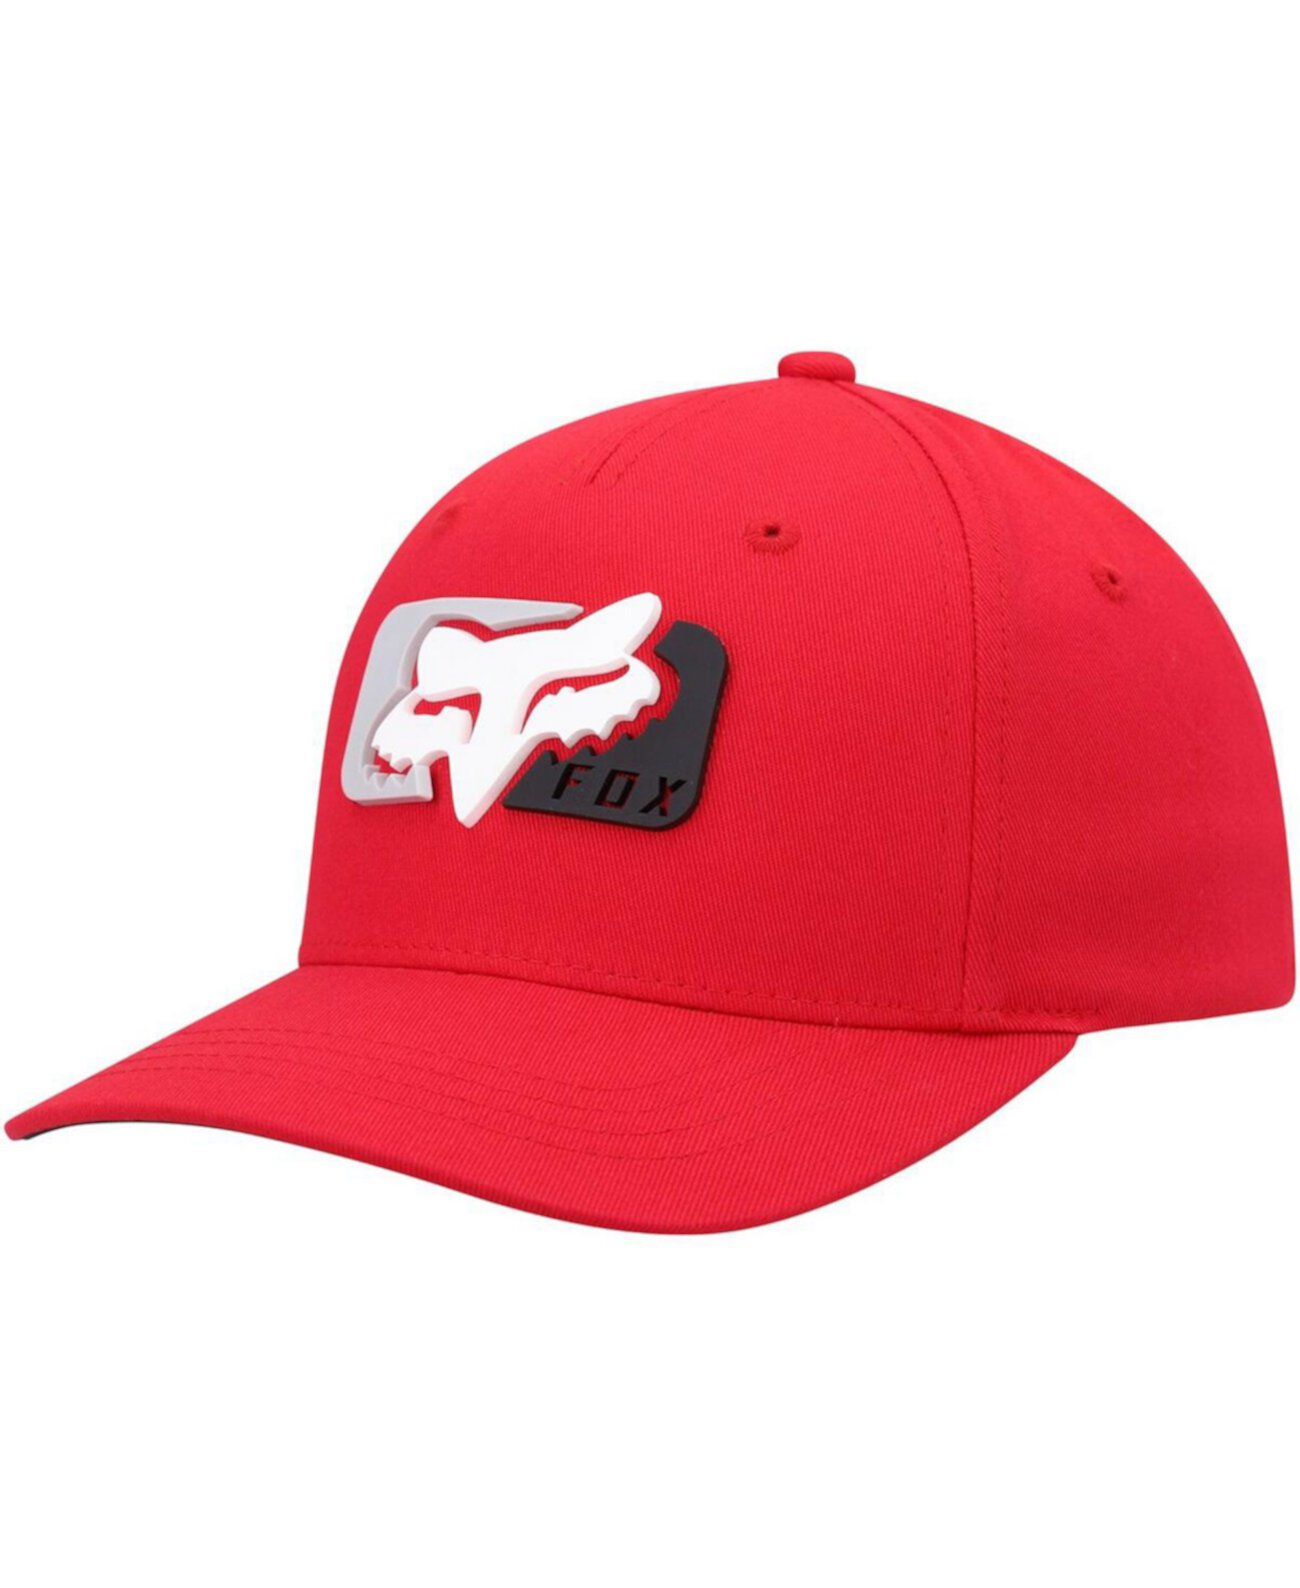 Молодежная красная шапка Mirer Flex для мальчиков Fox